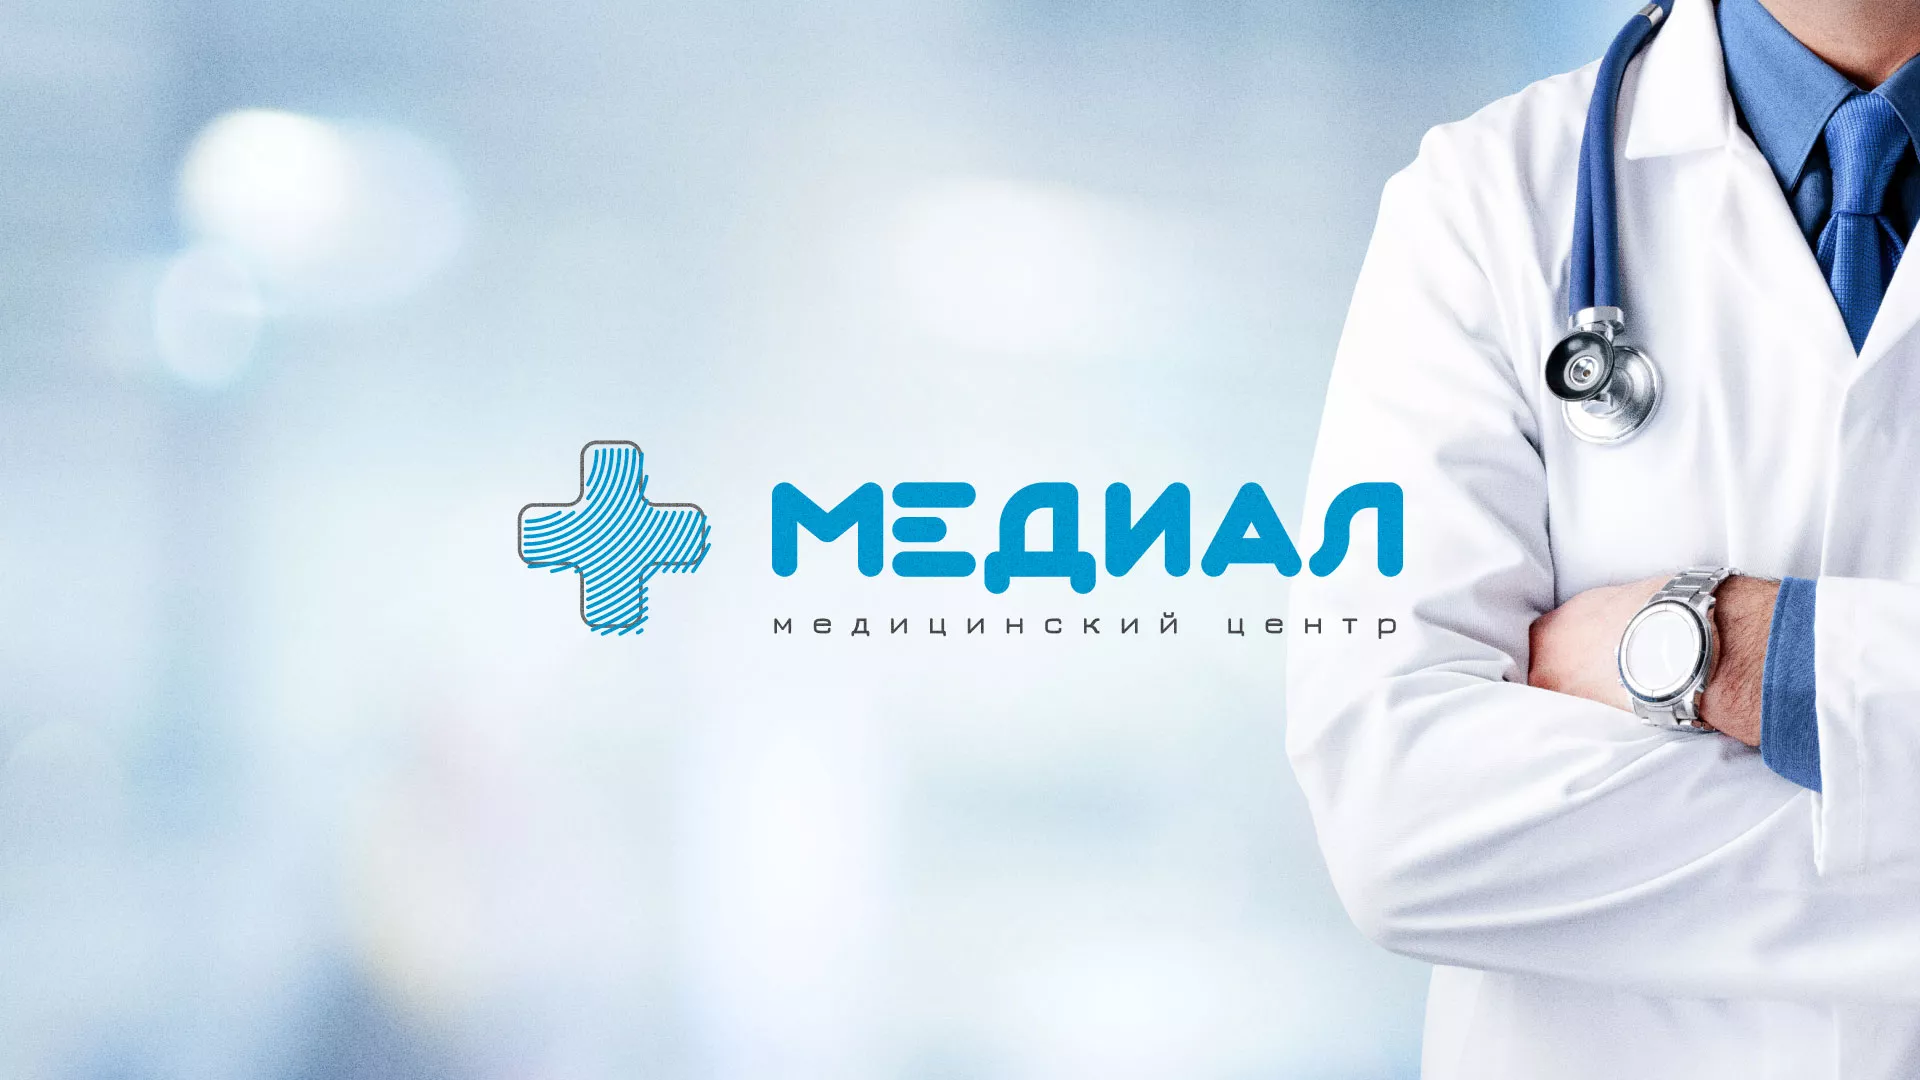 Создание сайта для медицинского центра «Медиал» в Алексеевке